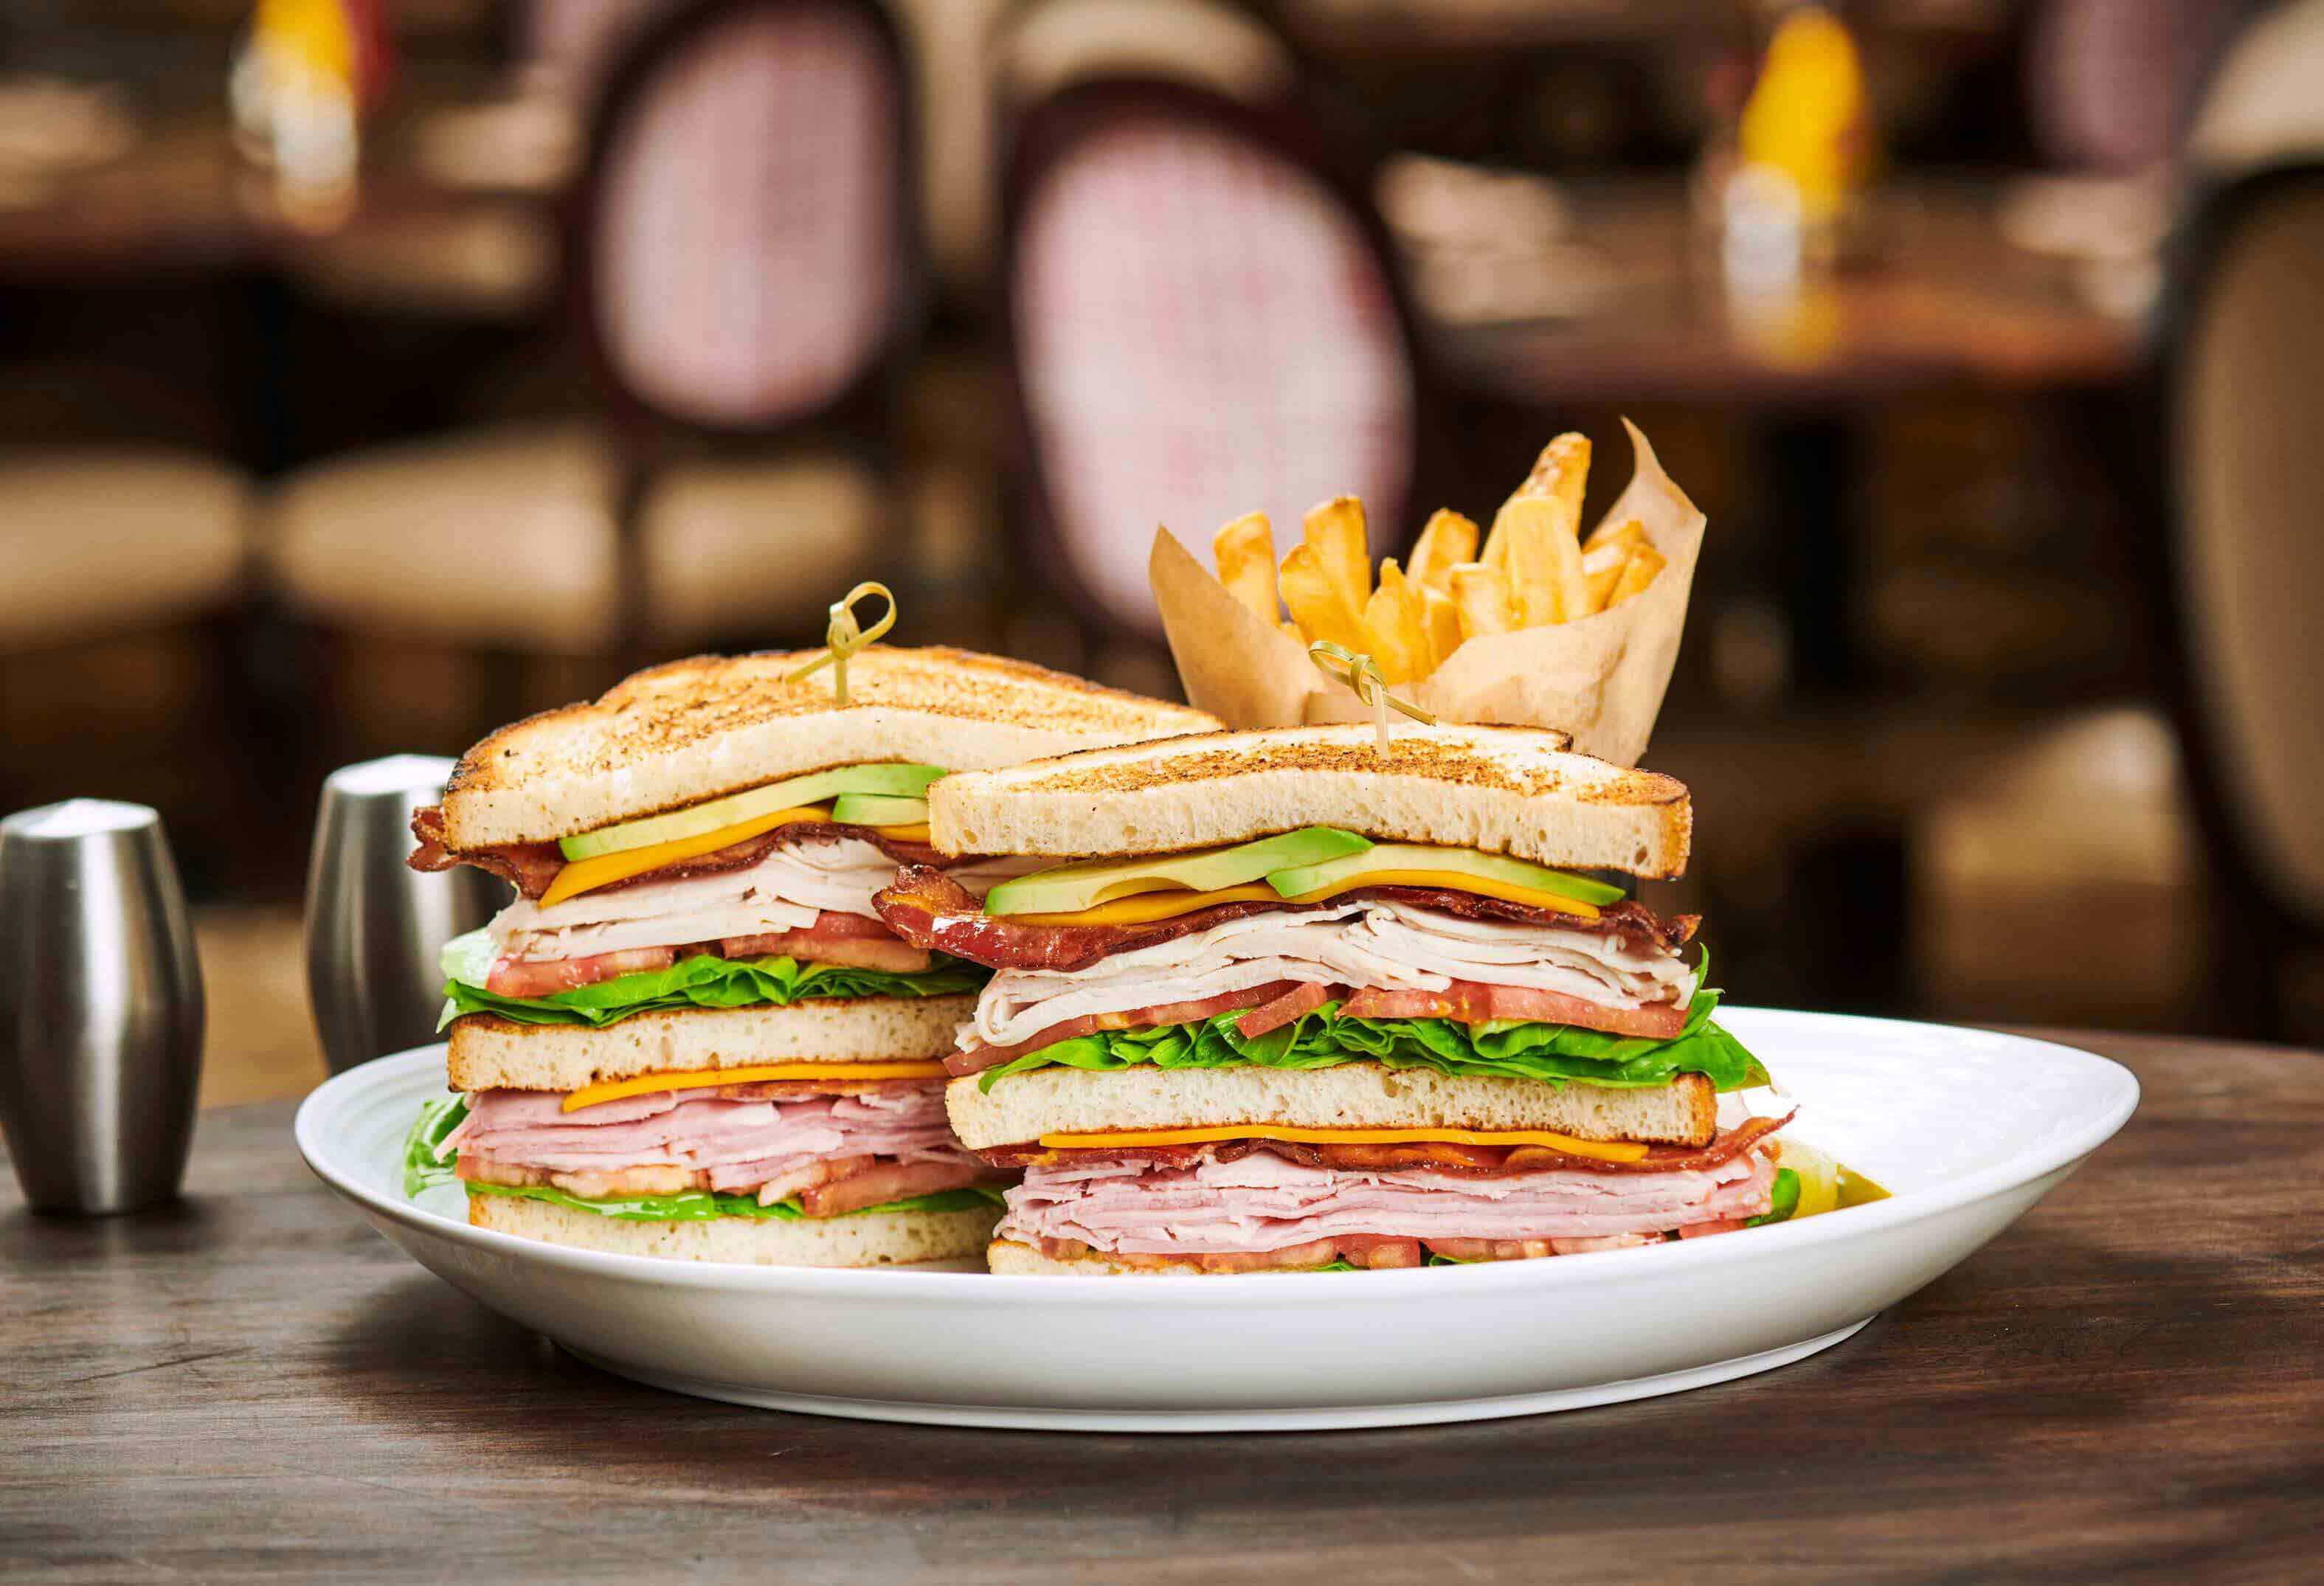 Cali Club Sandwich at Rise Kitchen & Deli